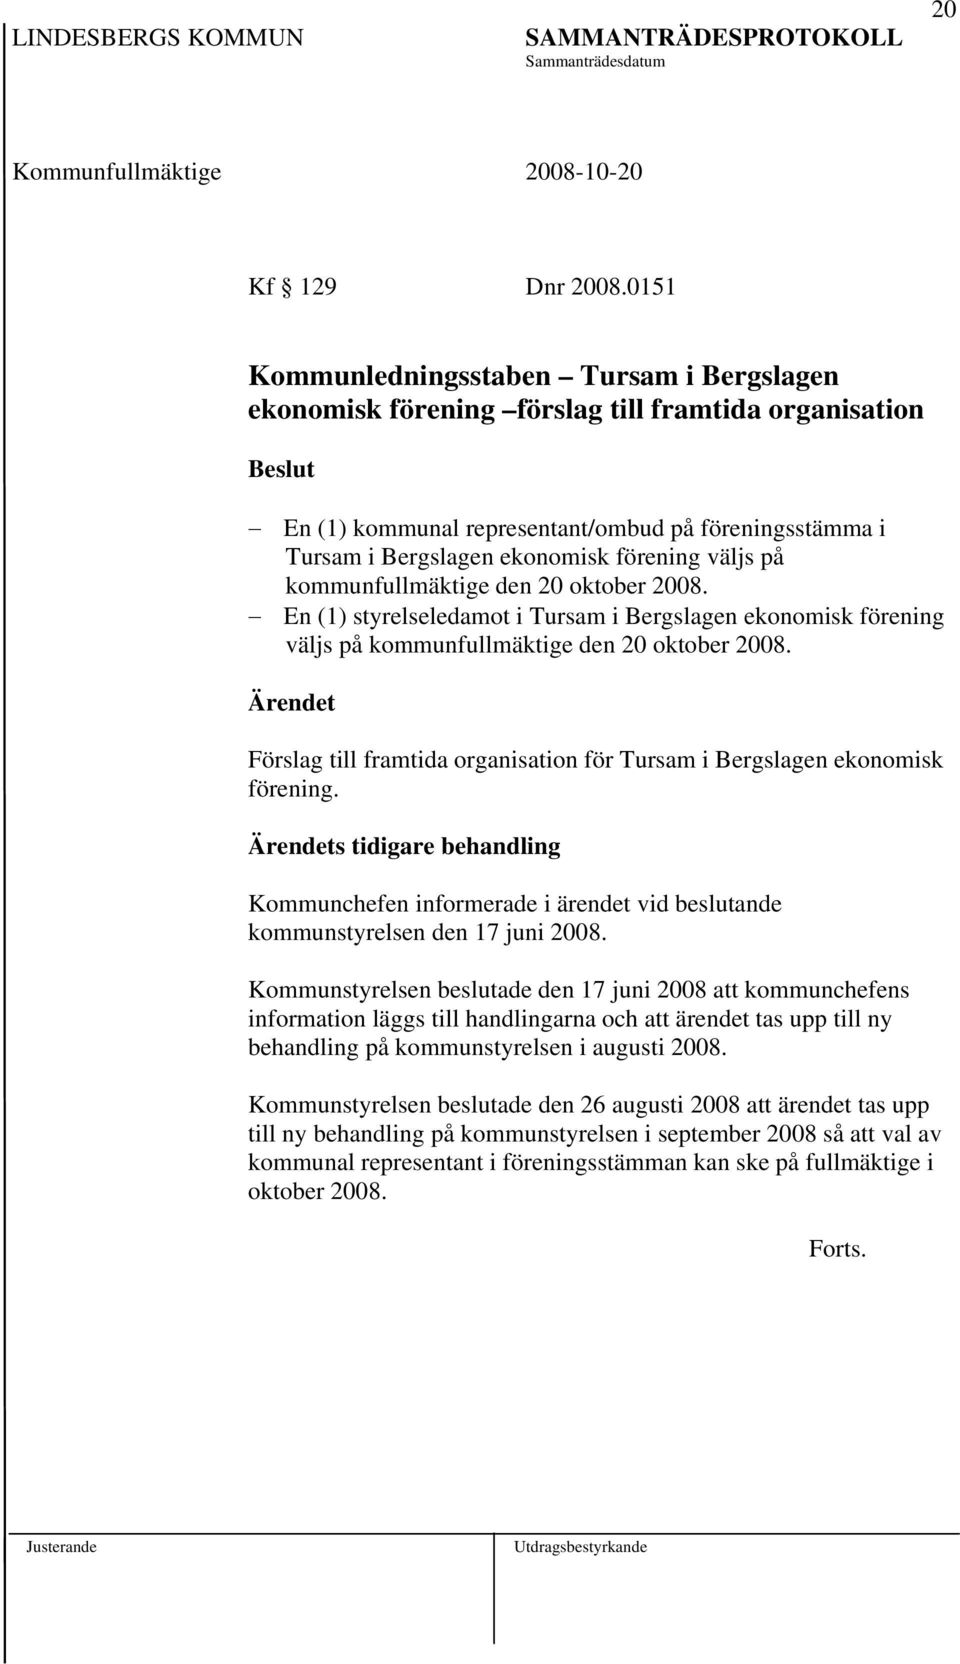 väljs på kommunfullmäktige den 20 oktober 2008. En (1) styrelseledamot i Tursam i Bergslagen ekonomisk förening väljs på kommunfullmäktige den 20 oktober 2008.